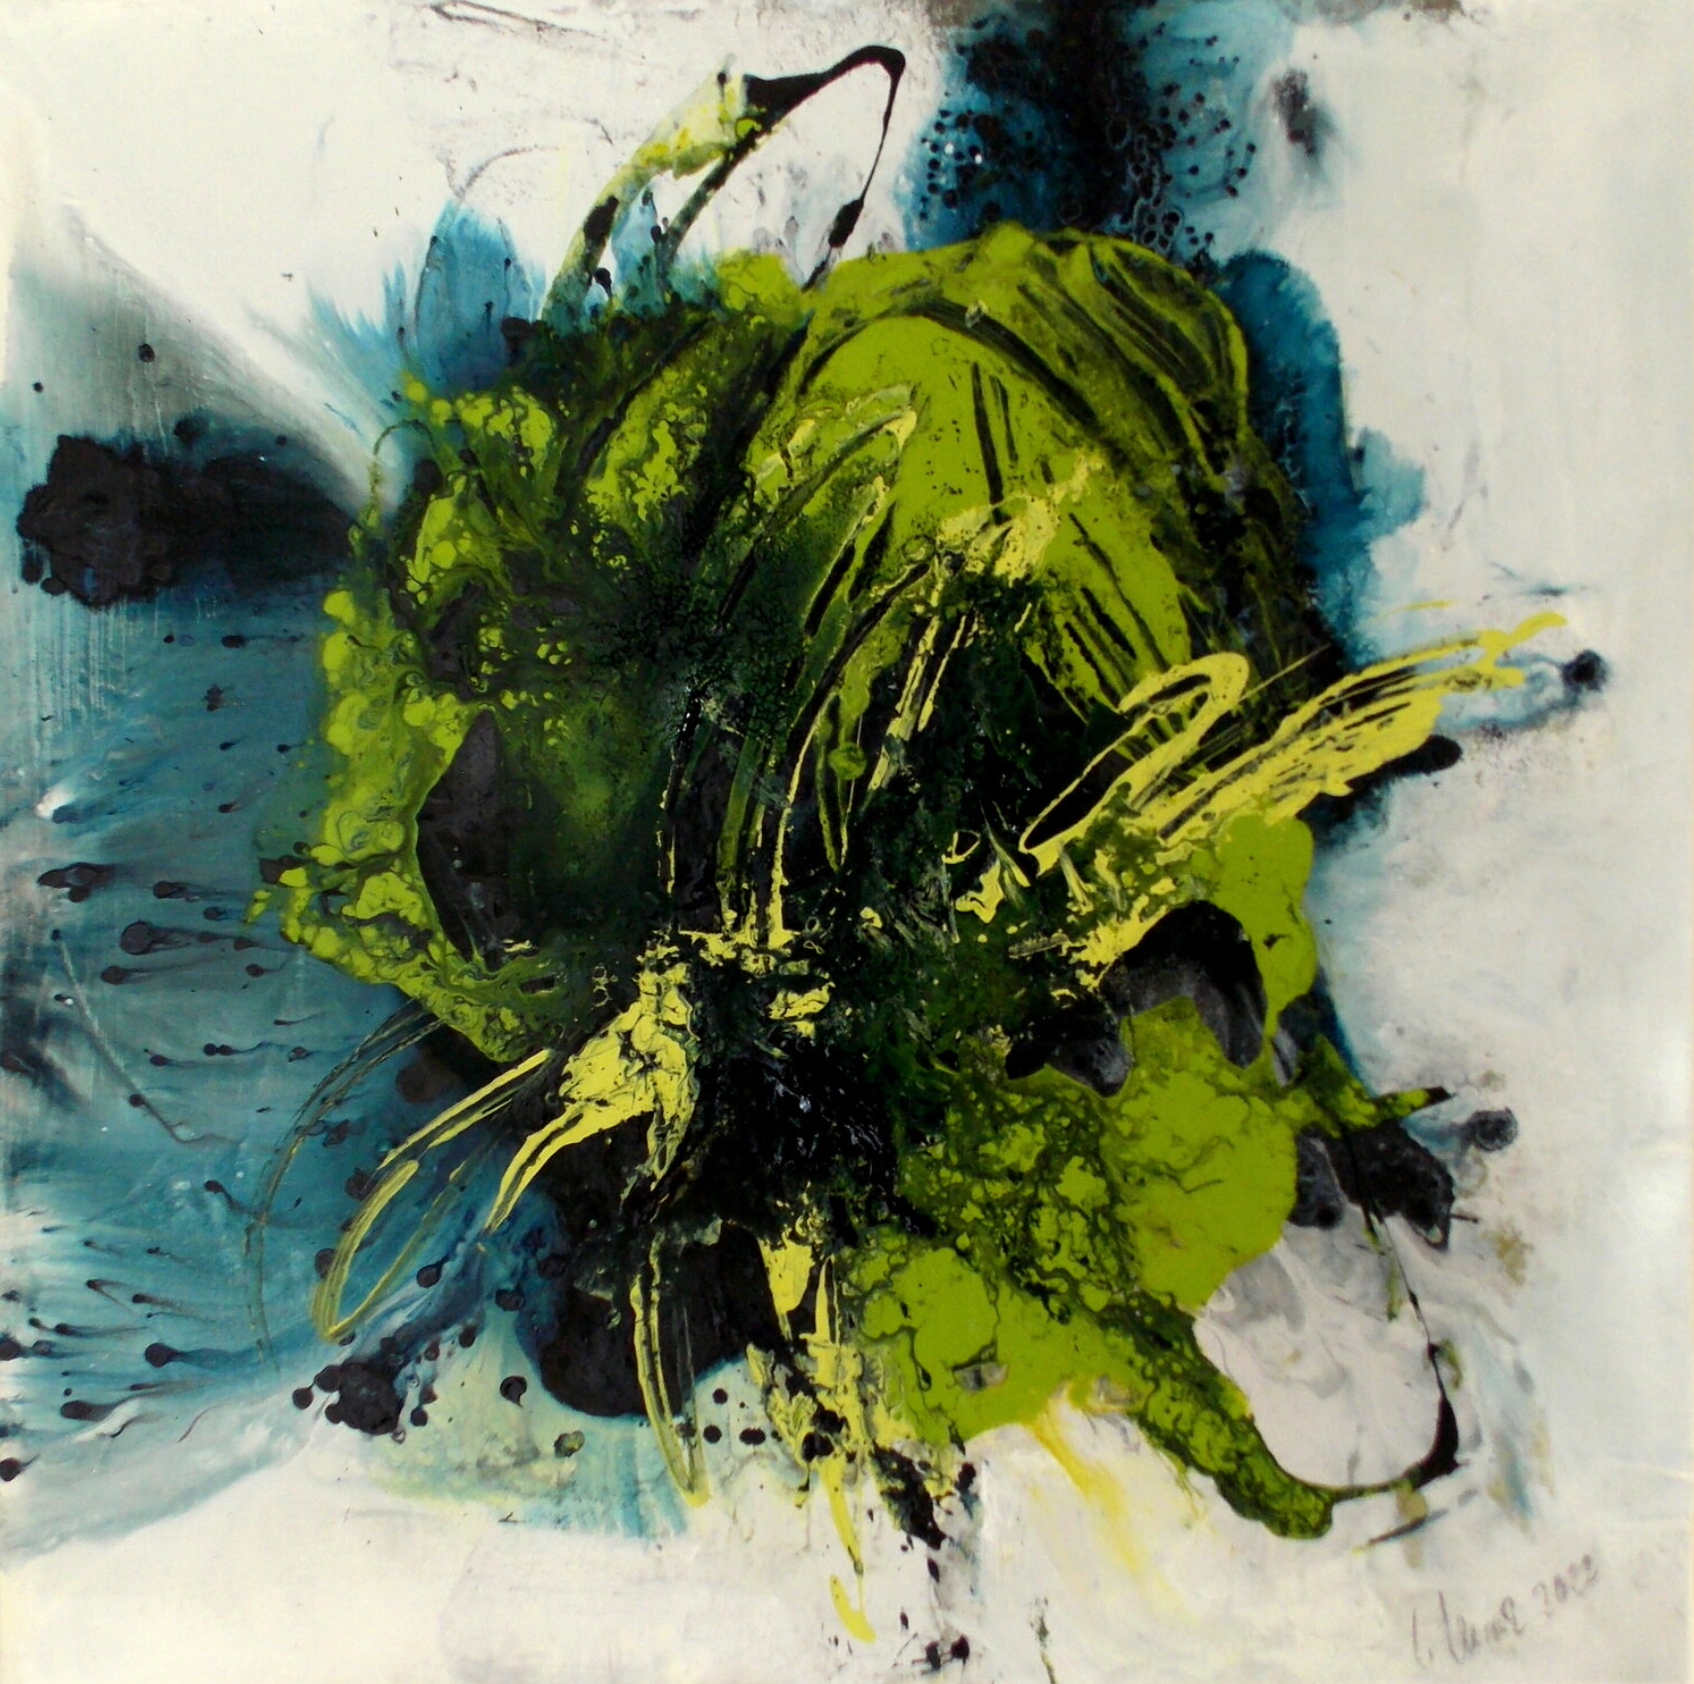 Dans le tableau expressionniste, abstrait et coloré "Clearing 3" de Christa Haack, les couleurs jaune, vert et bleu dominent.